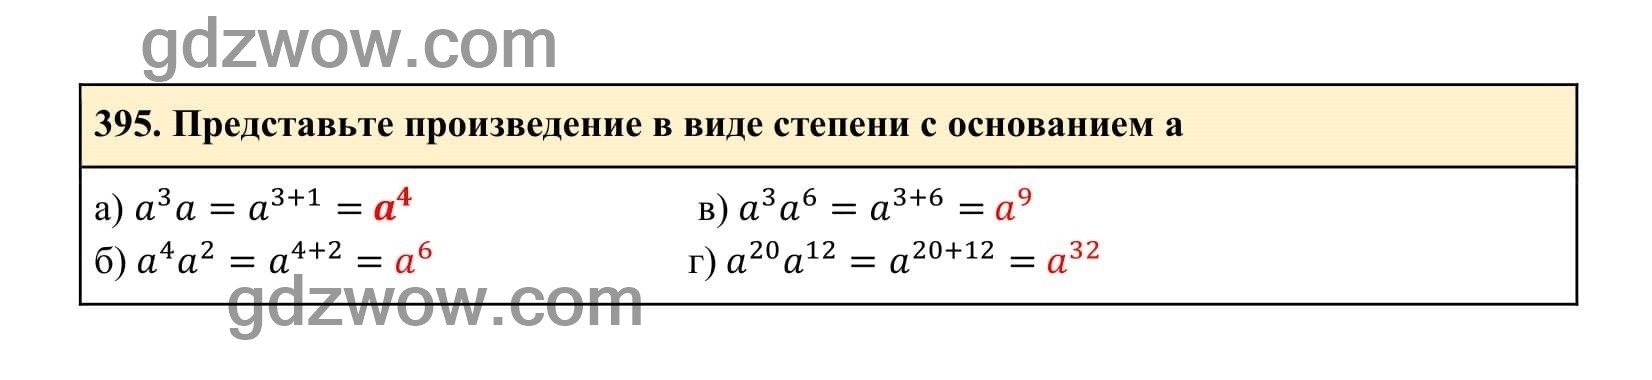 Упражнение 395 - ГДЗ по Алгебре 7 класс Учебник Макарычев (решебник) - GDZwow